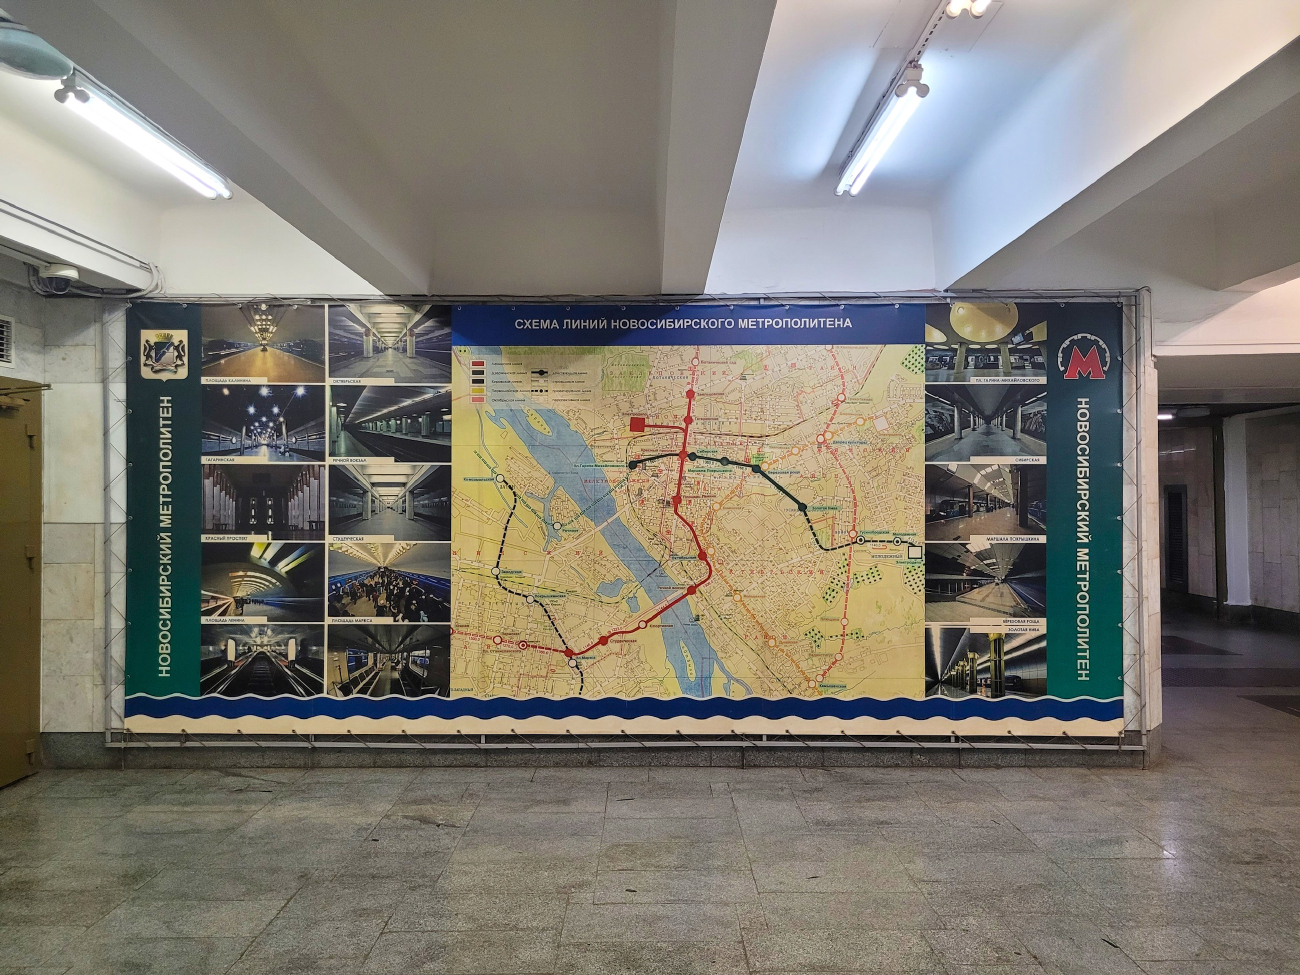 Новосибирск — Дзержинская линия — станция "Маршала Покрышкина"